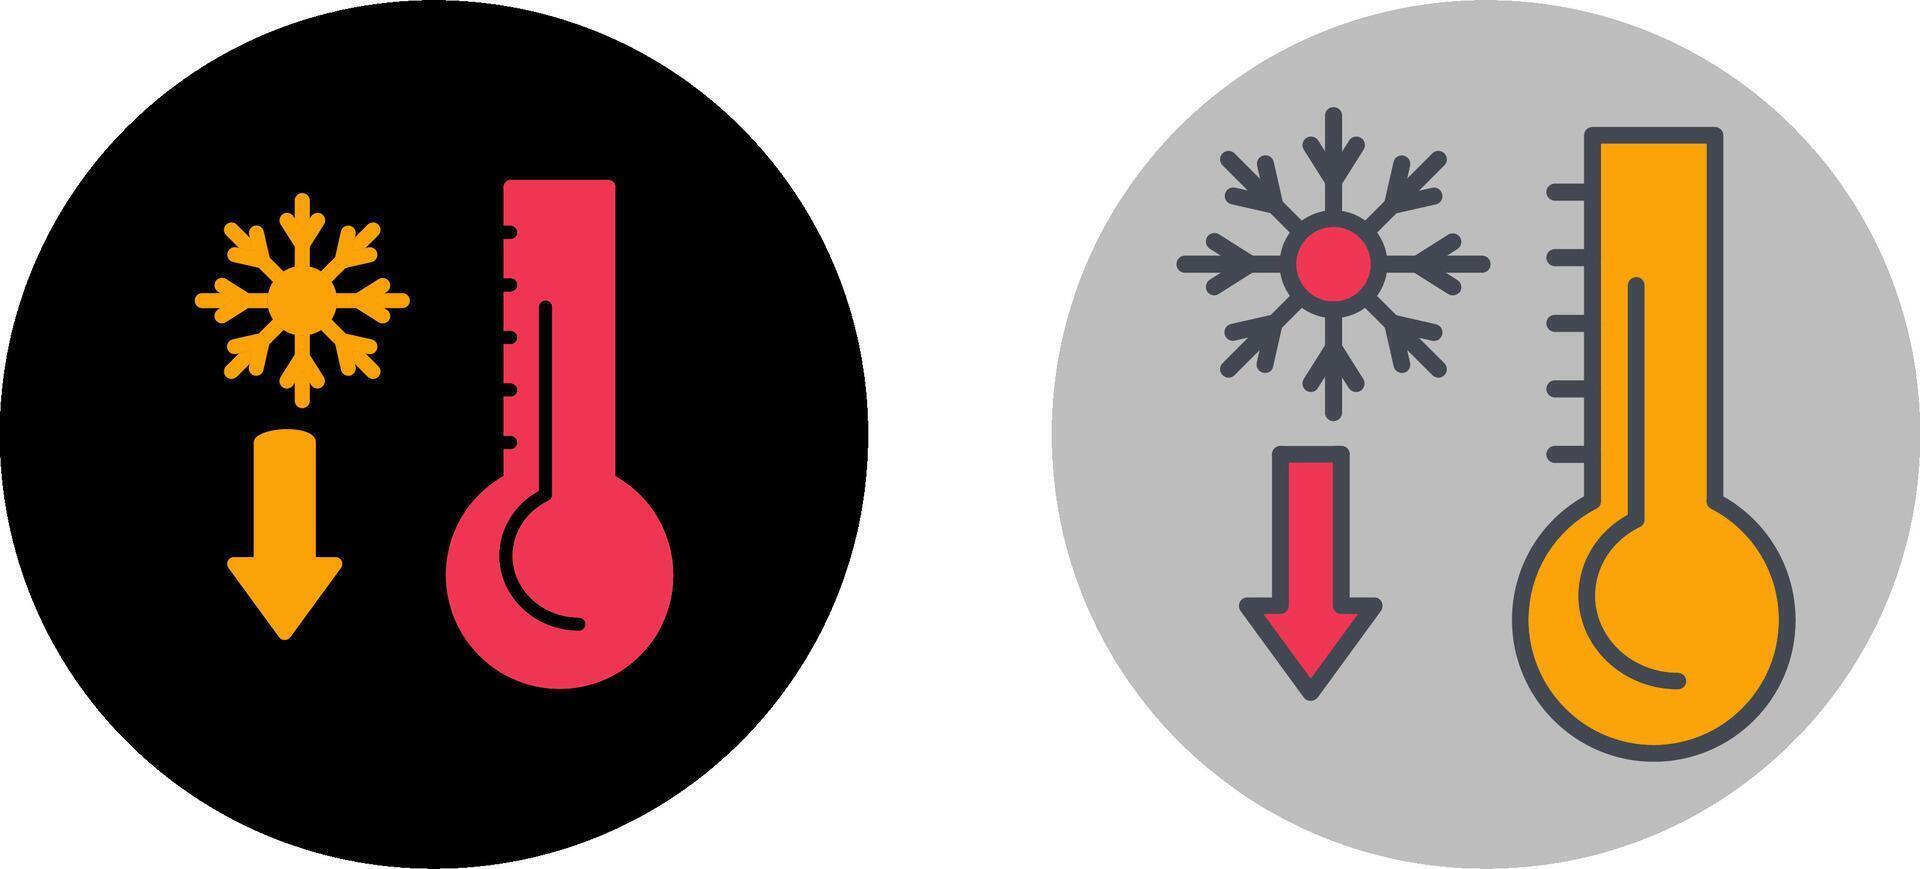 diseño de icono de termómetro vector